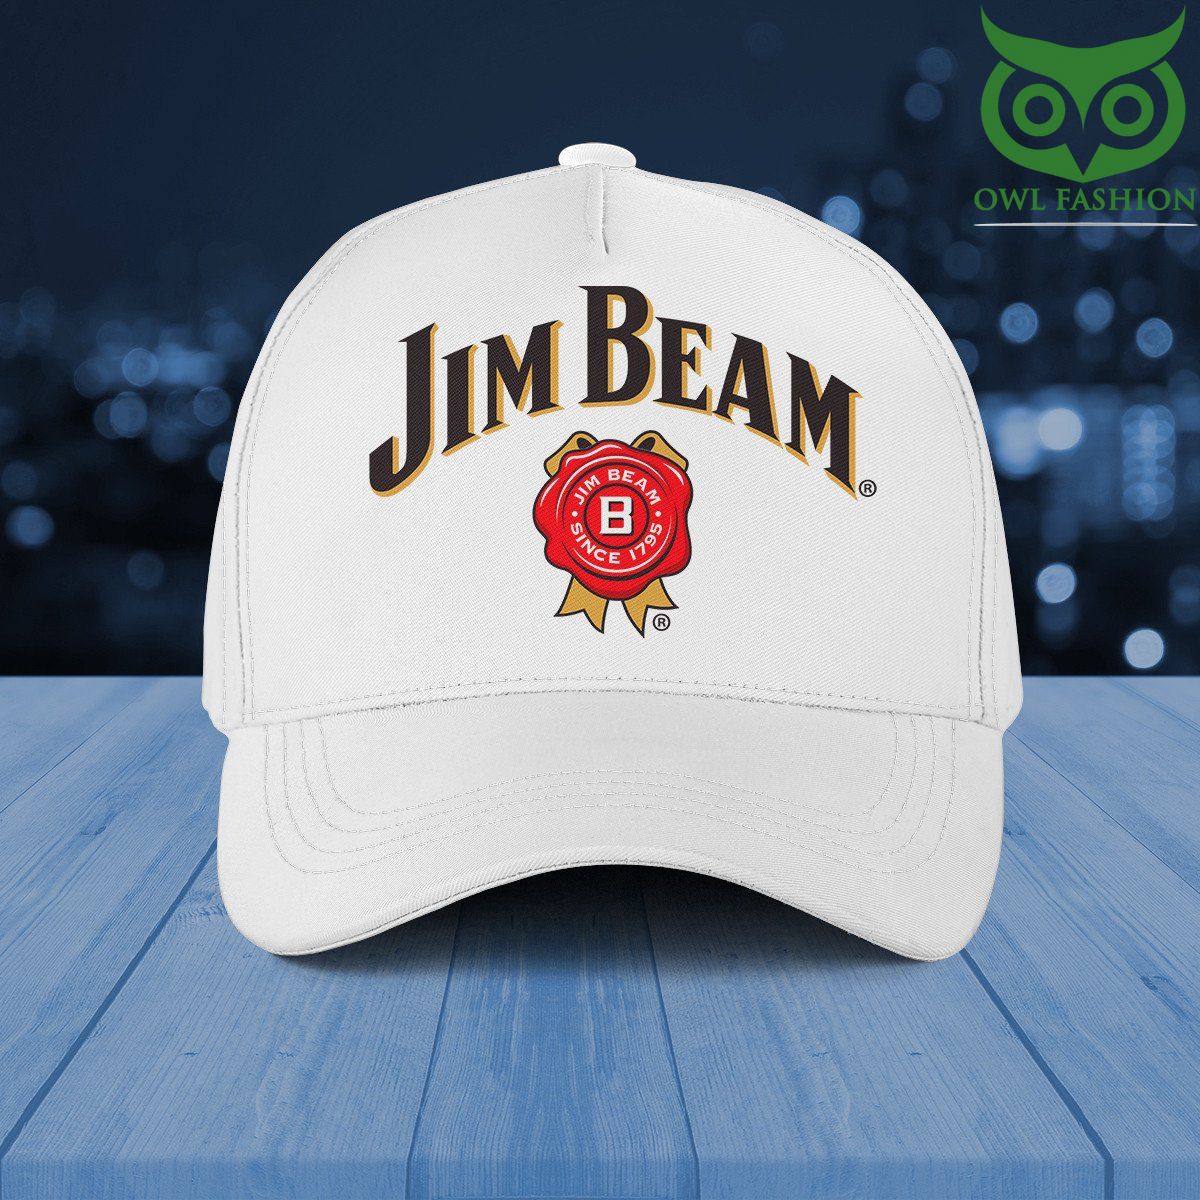 Jim Beam since 1795 Baseball Cap 